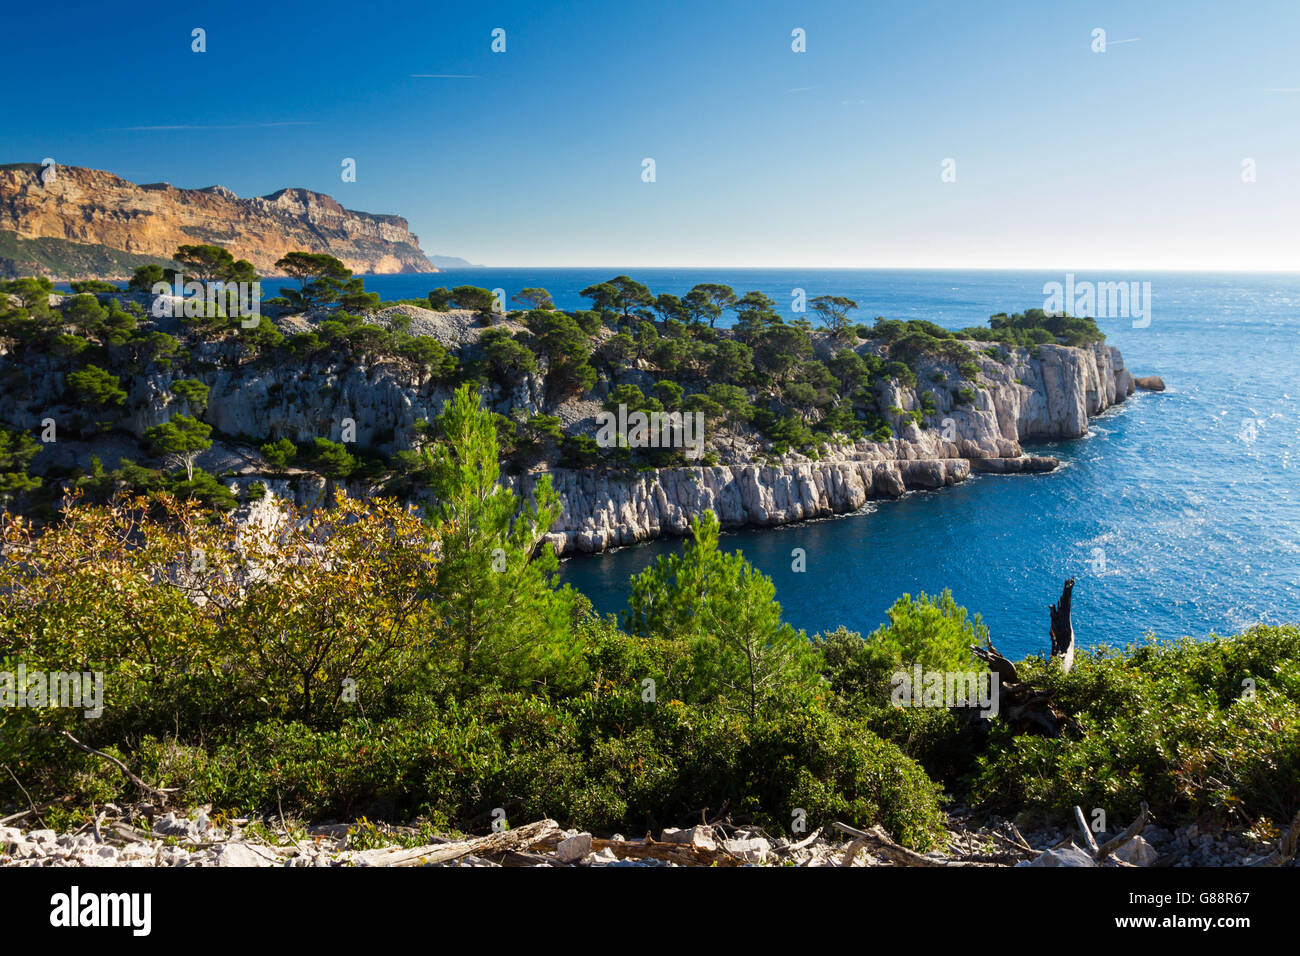 Les Calanques cliffs, Cassis, Cote d'Azur, France Stock Photo - Alamy